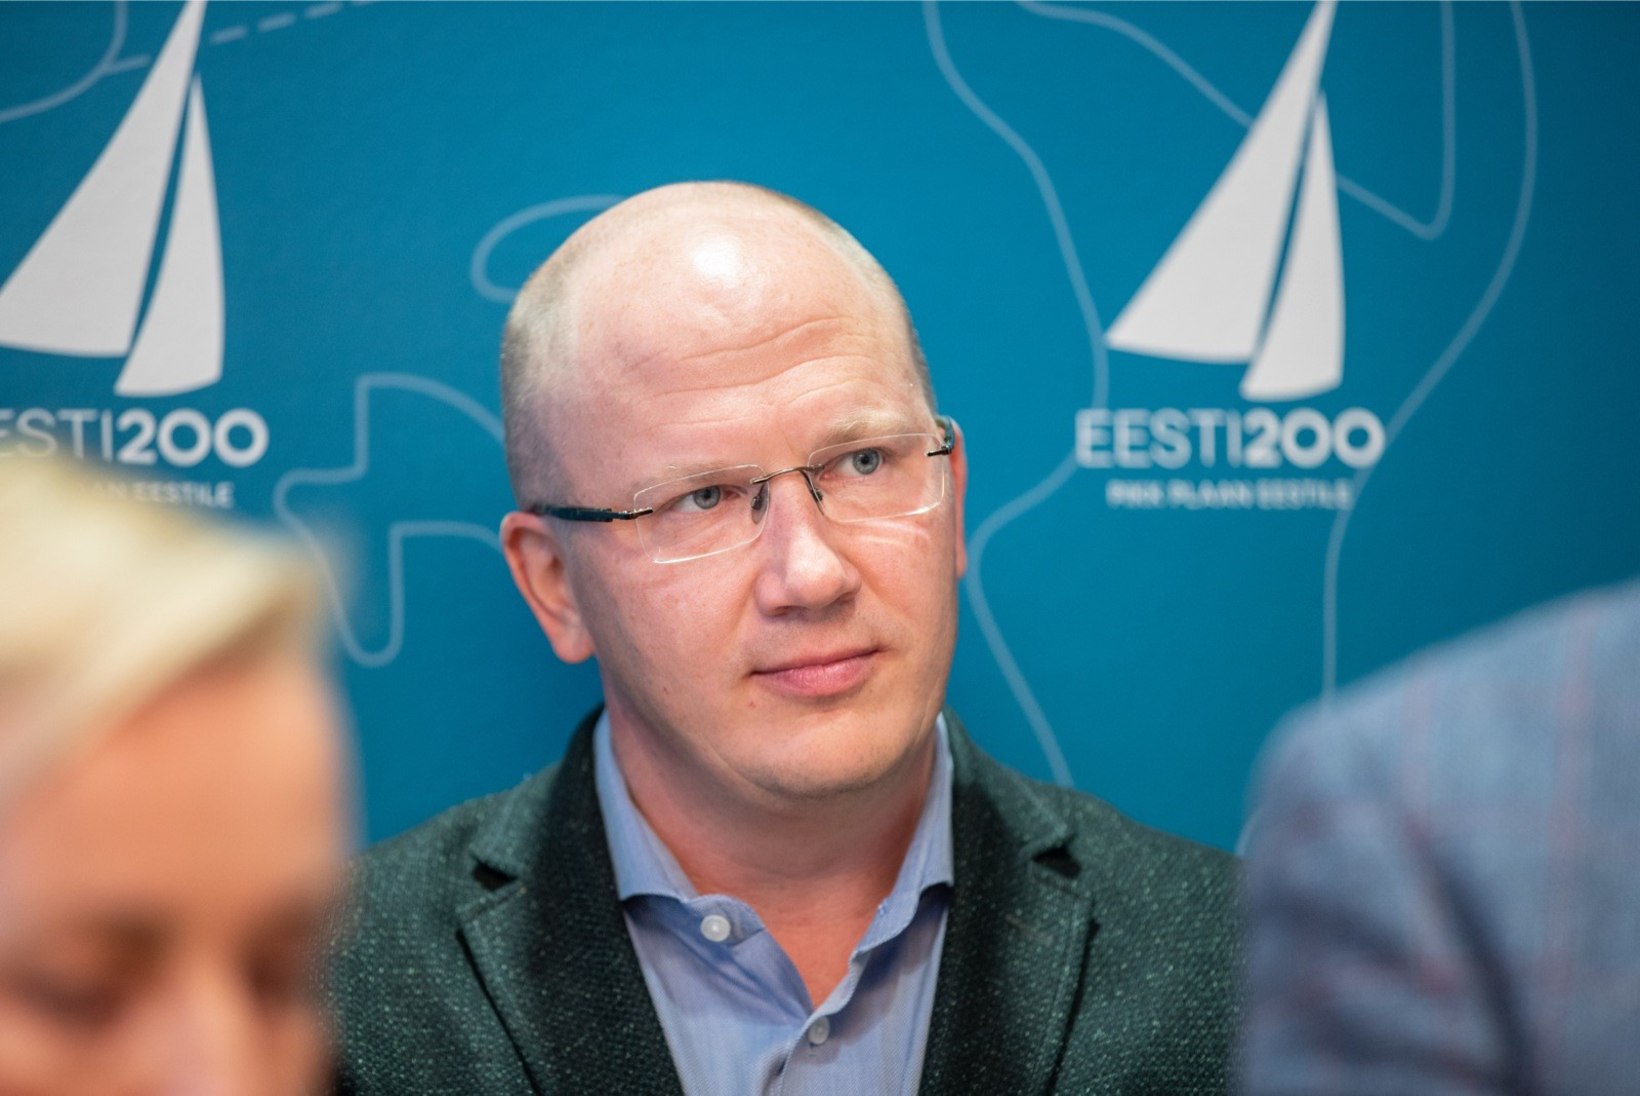 Eesti 200 saab erakonna luua:  500 liiget on olemas